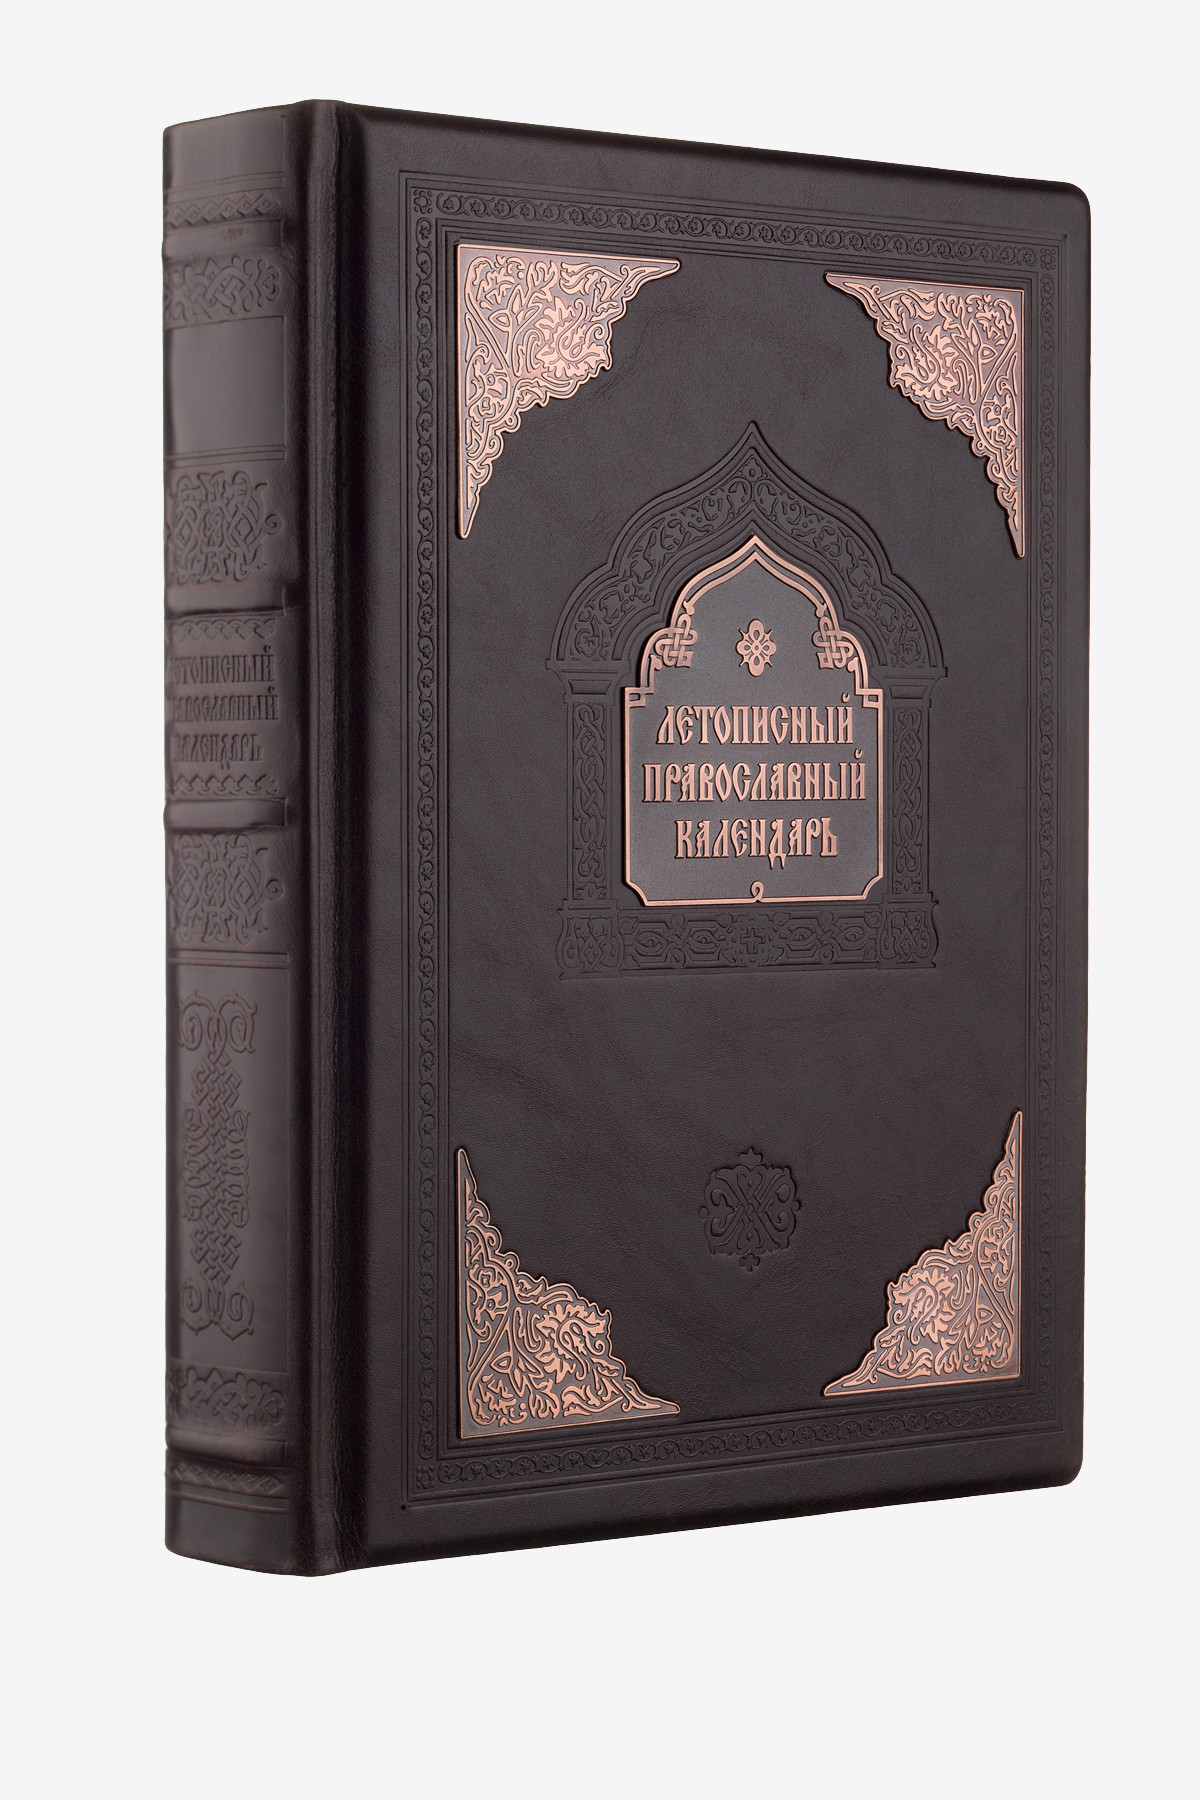 Летописный православный календарь - Подарочные книги в элитном кожаном переплете